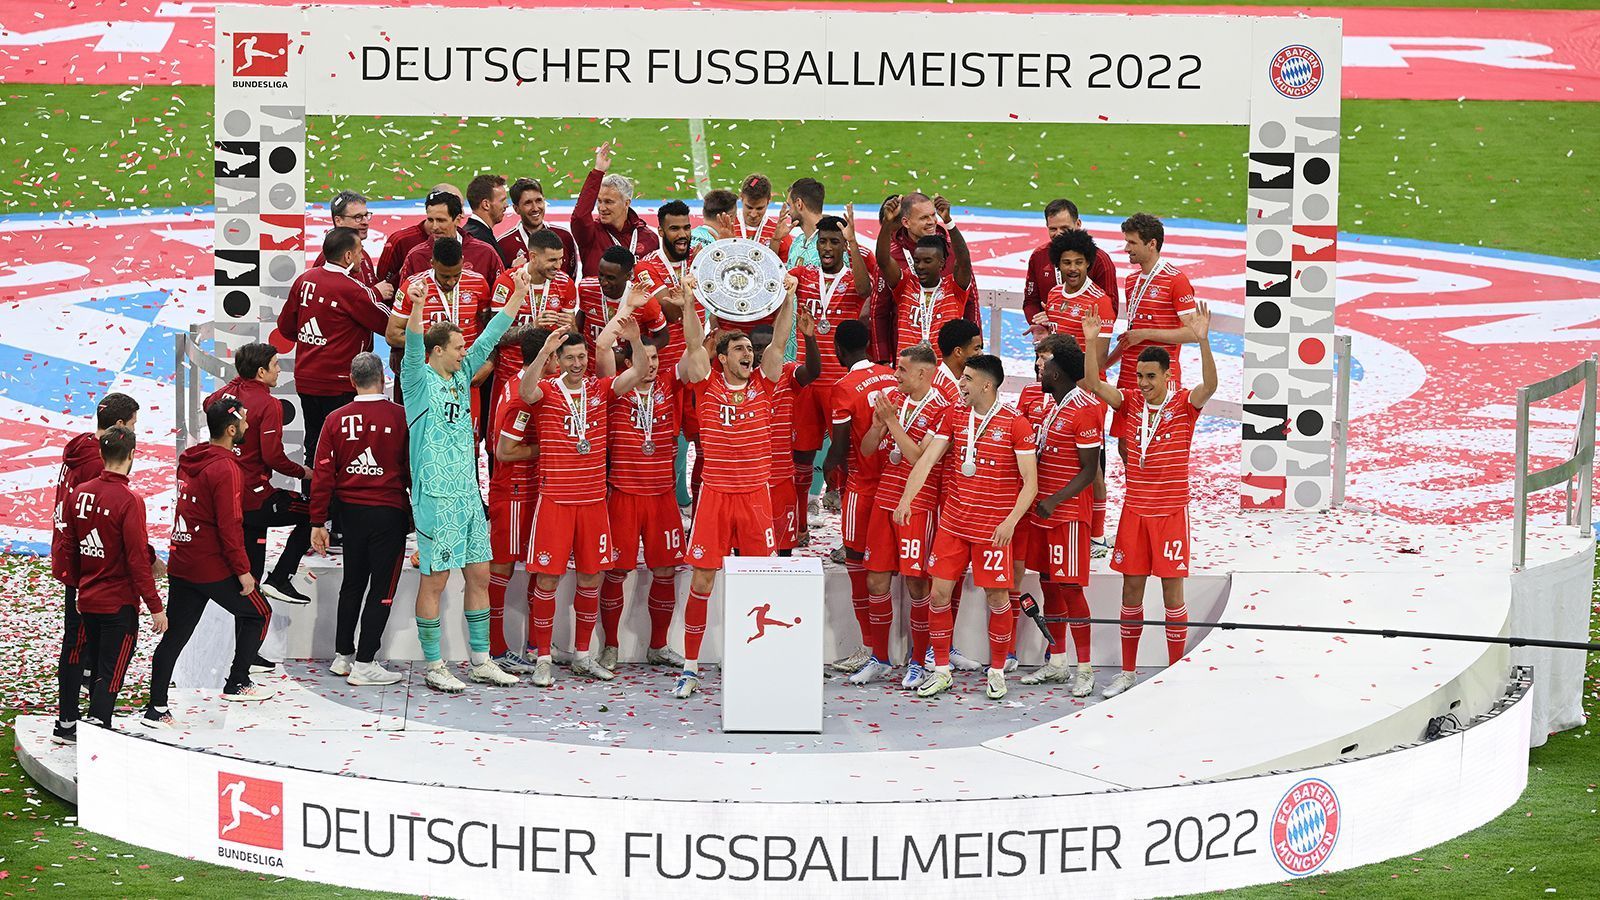 
                <strong>So feiert der FC Bayern München die 32. Meisterschaft</strong><br>
                Mit dem 7:0-Sieg am fünften Spieltag gegen den VfL Bochum stellten die Münchener den höchsten Sieg in der noch laufenden Bundesliga-Saison auf. 
              